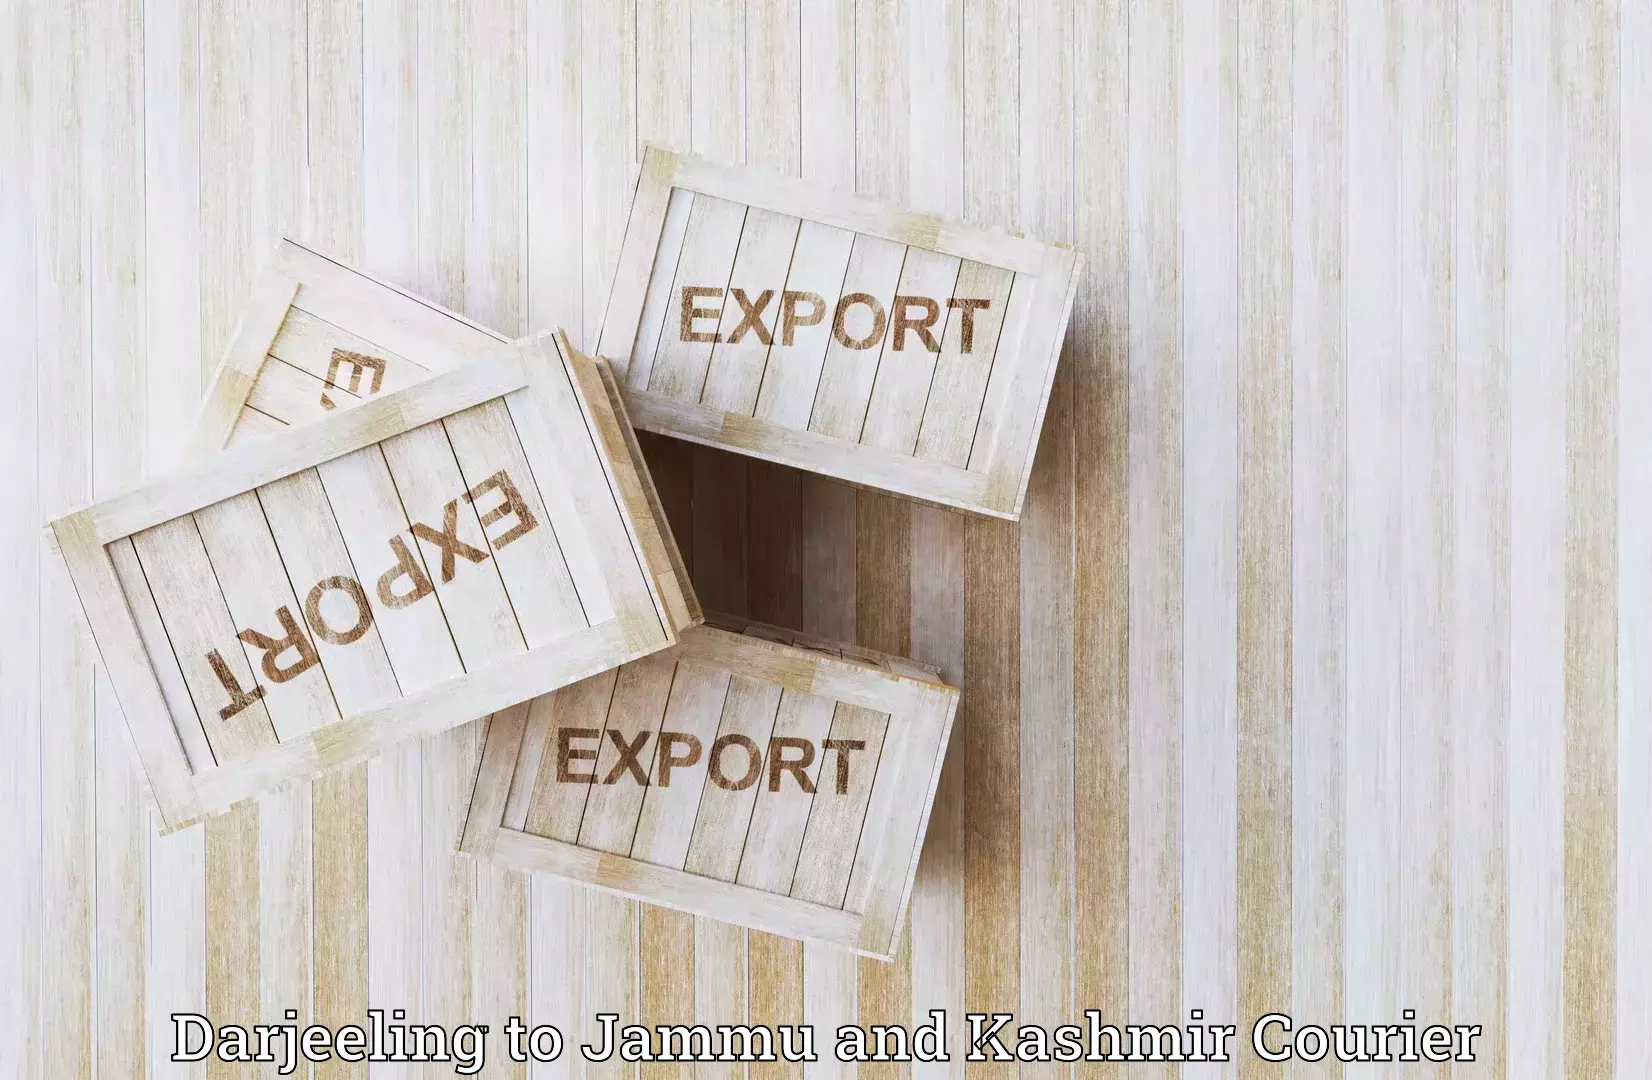 Express courier capabilities Darjeeling to Kishtwar